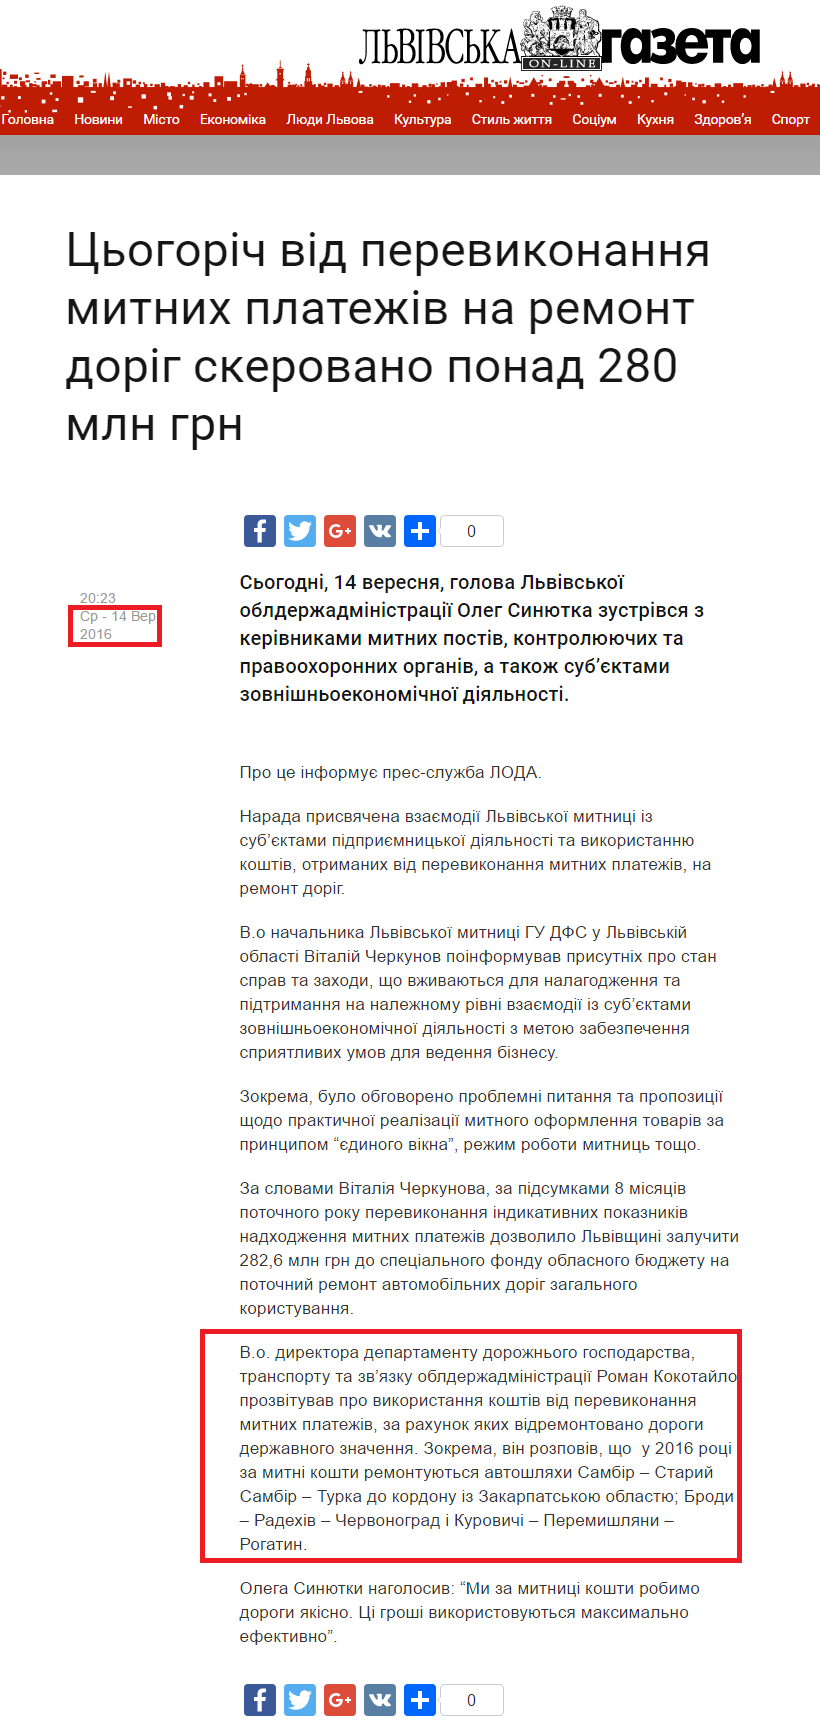 http://gazeta.lviv.ua/2016/09/14/cogorich-vid-perevikonannya-mitnix-platezhiv-na-remont-dorig-skerovano-ponad-280-mln-grn/